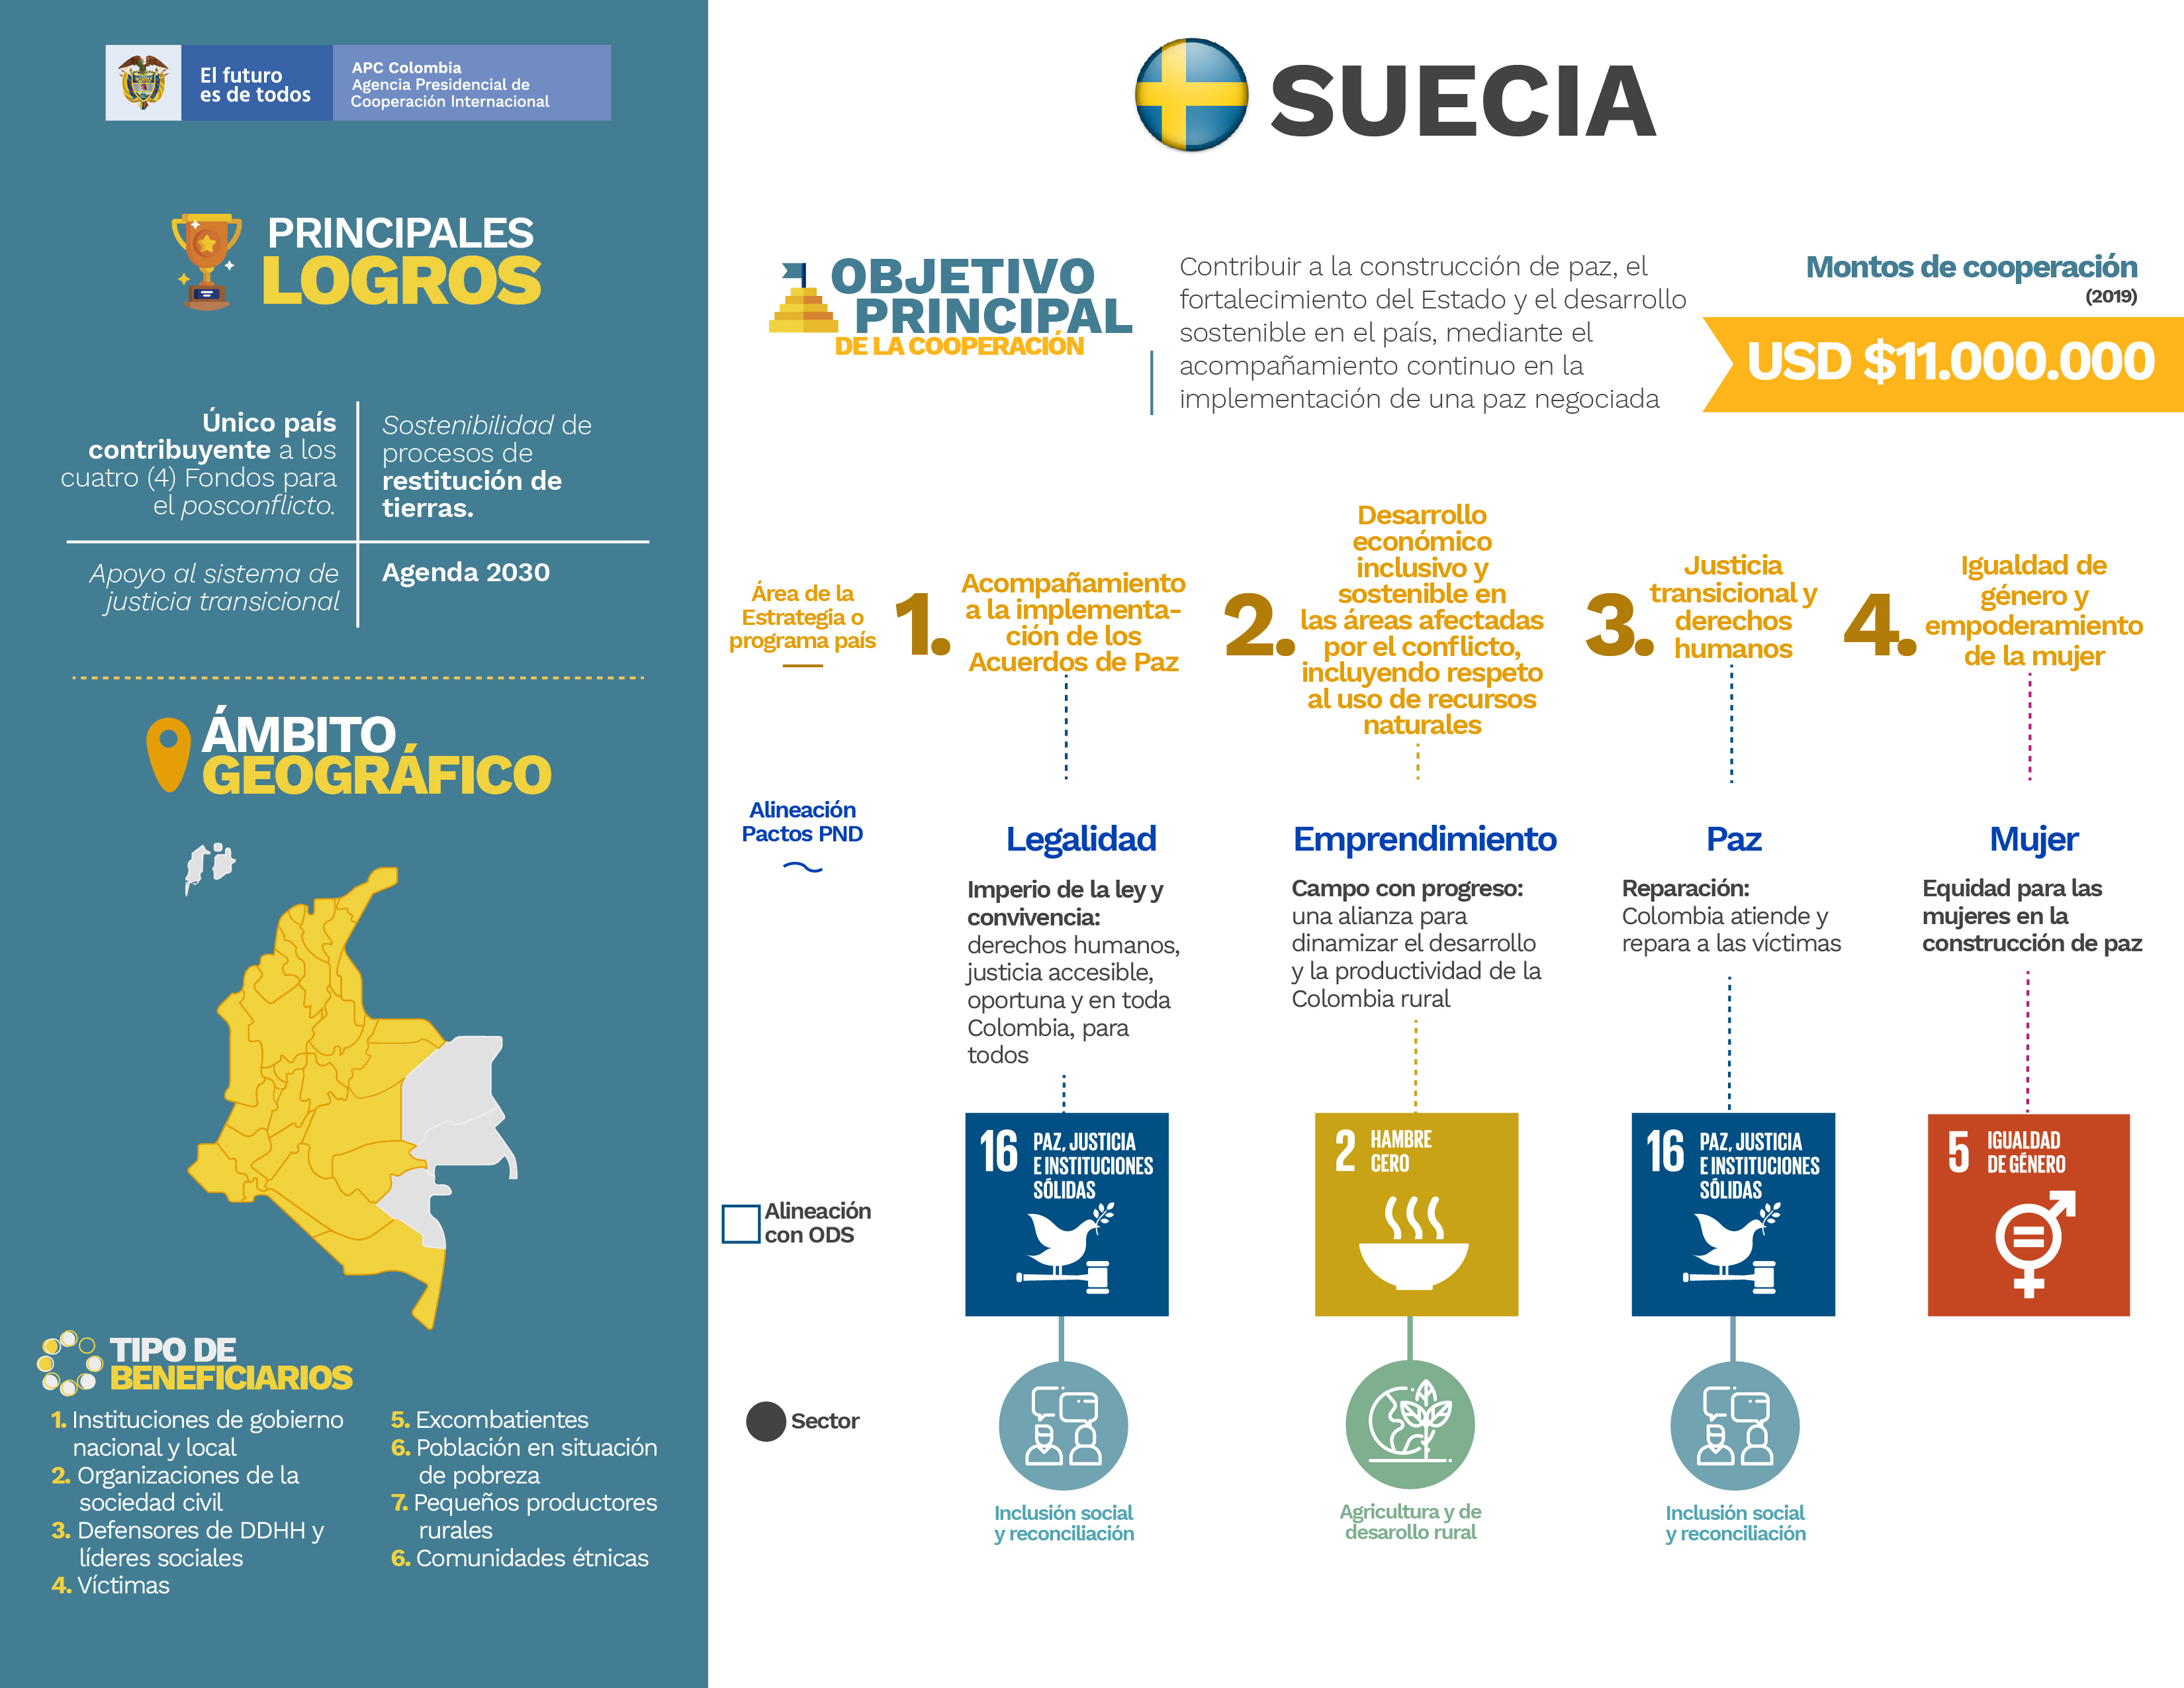 Infografía de la cooperación de Suecia en Colombia